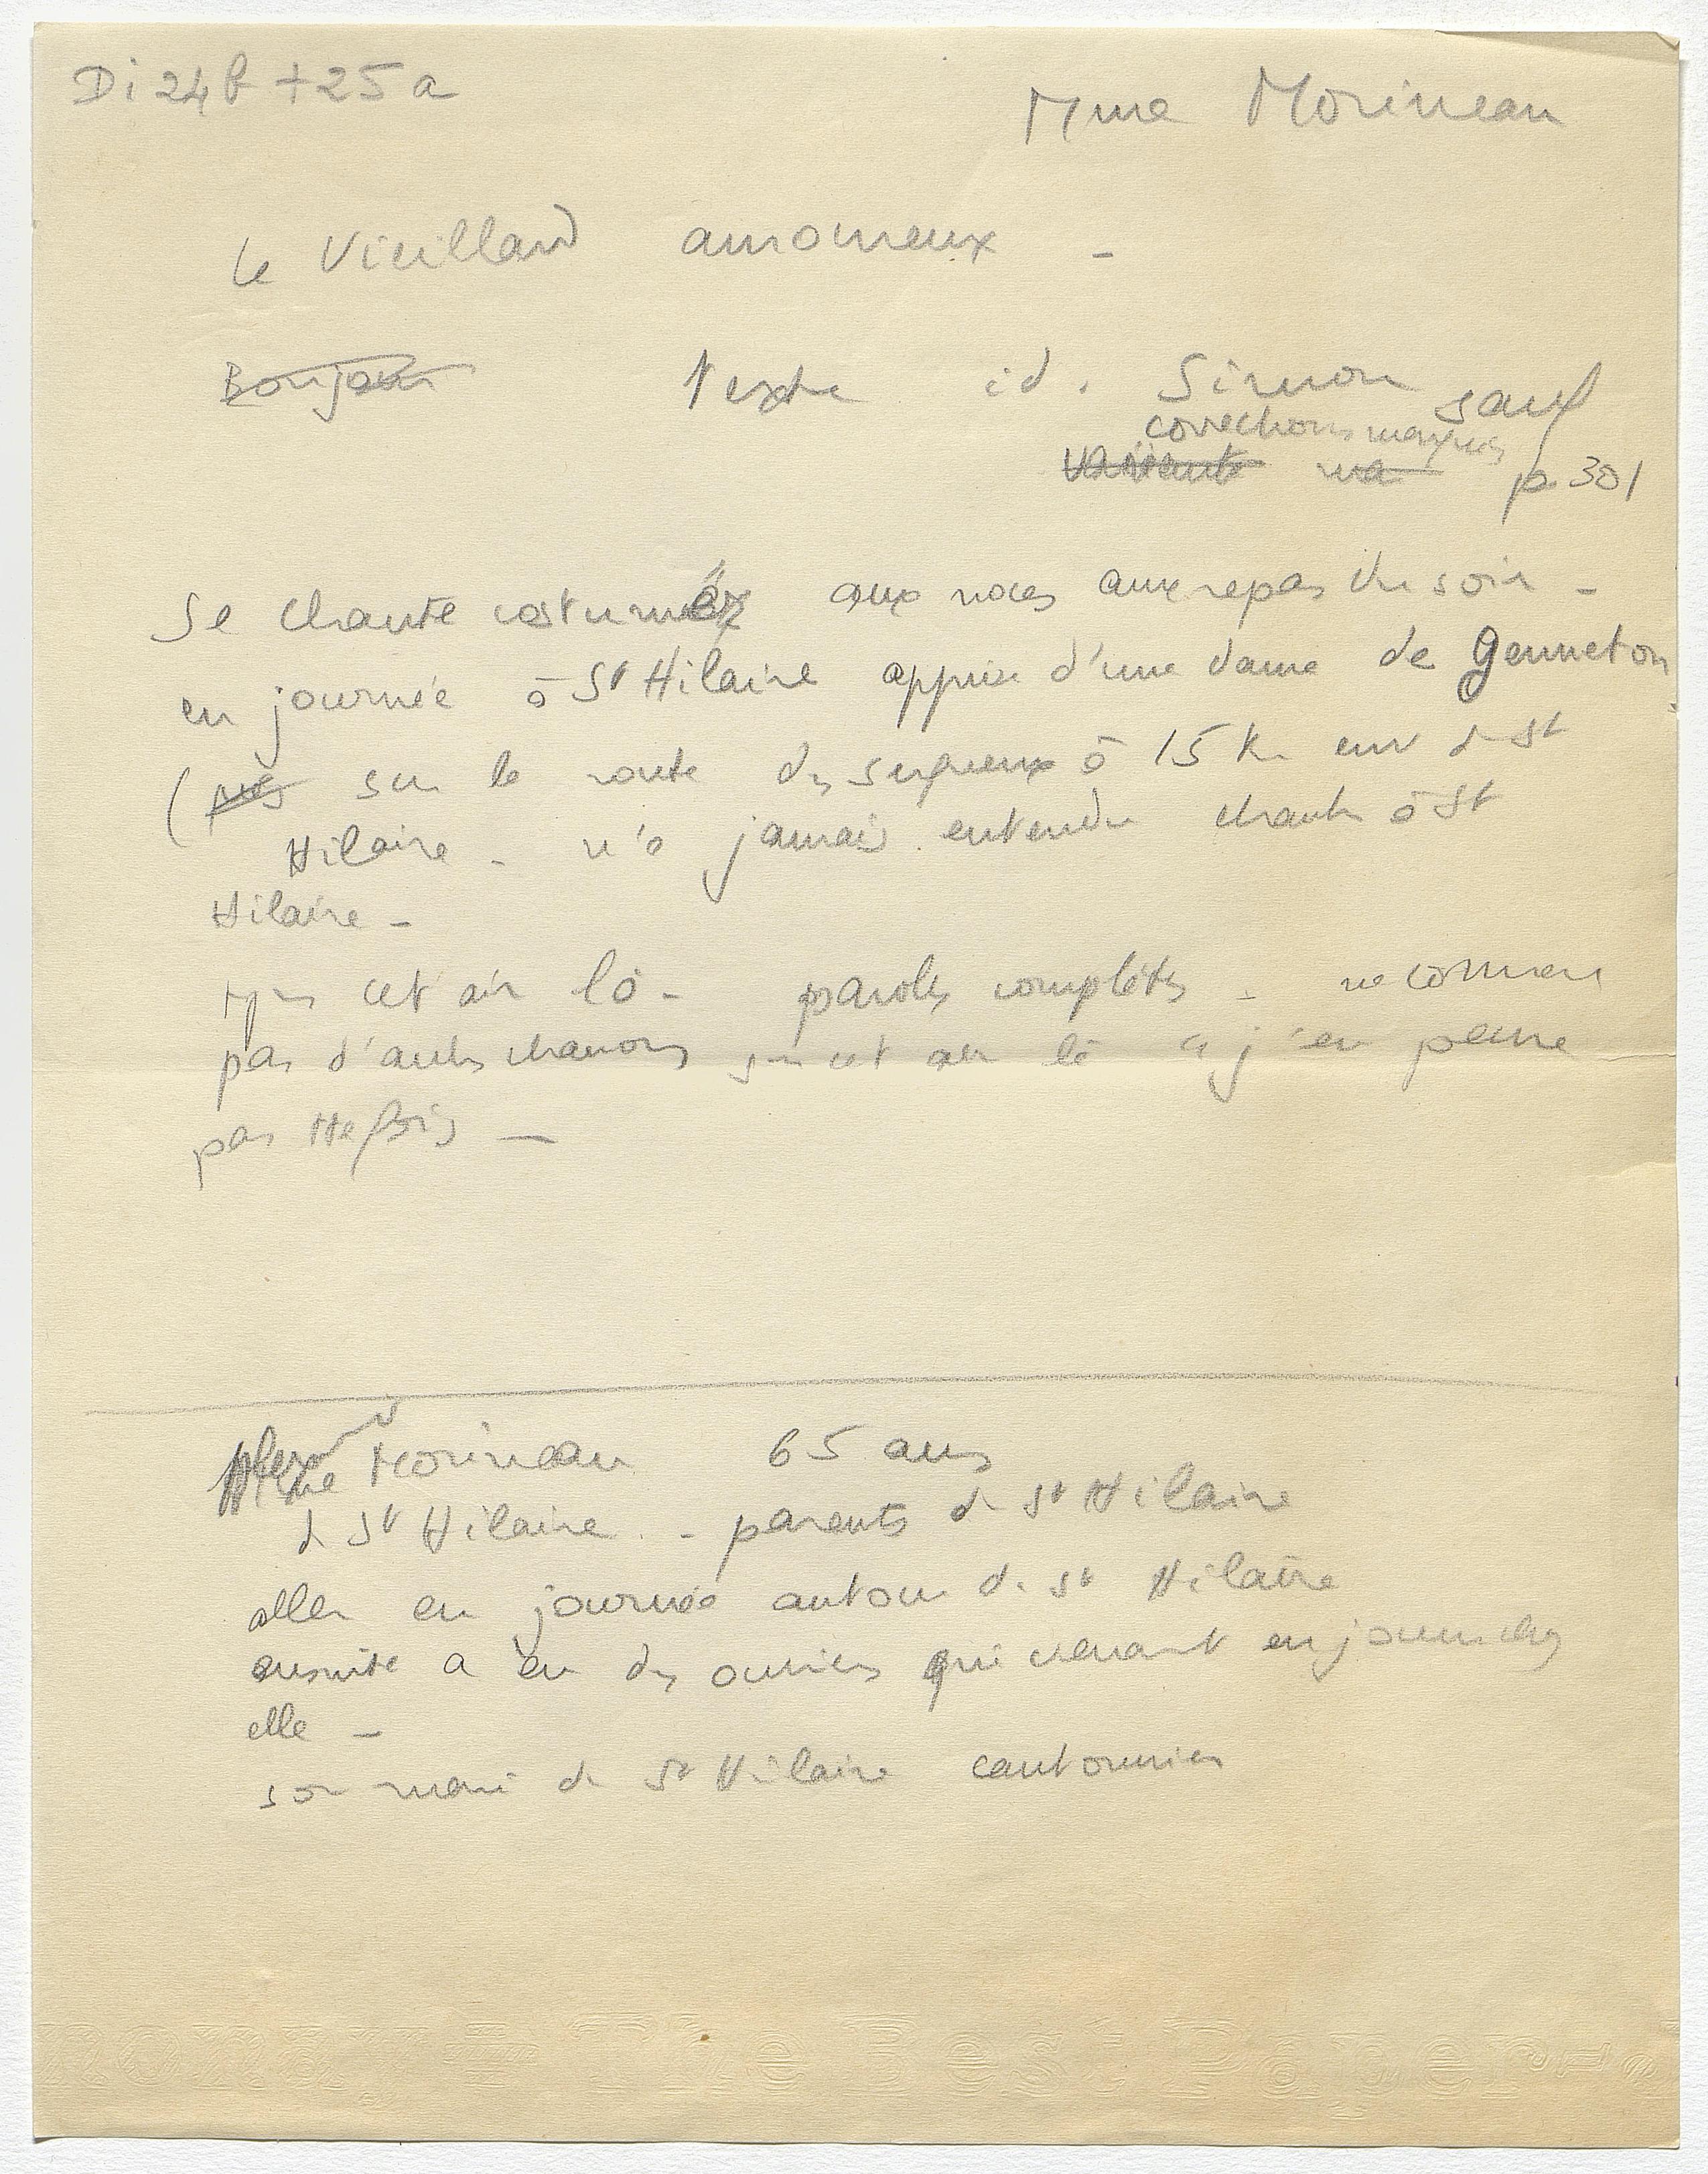 Notes de Marcel-Dubois relatives à un des chants collectés auprès de Mme Morineau (Archives nationales, 20130043/38, scan FRAN_0011_02742_L.jpg)